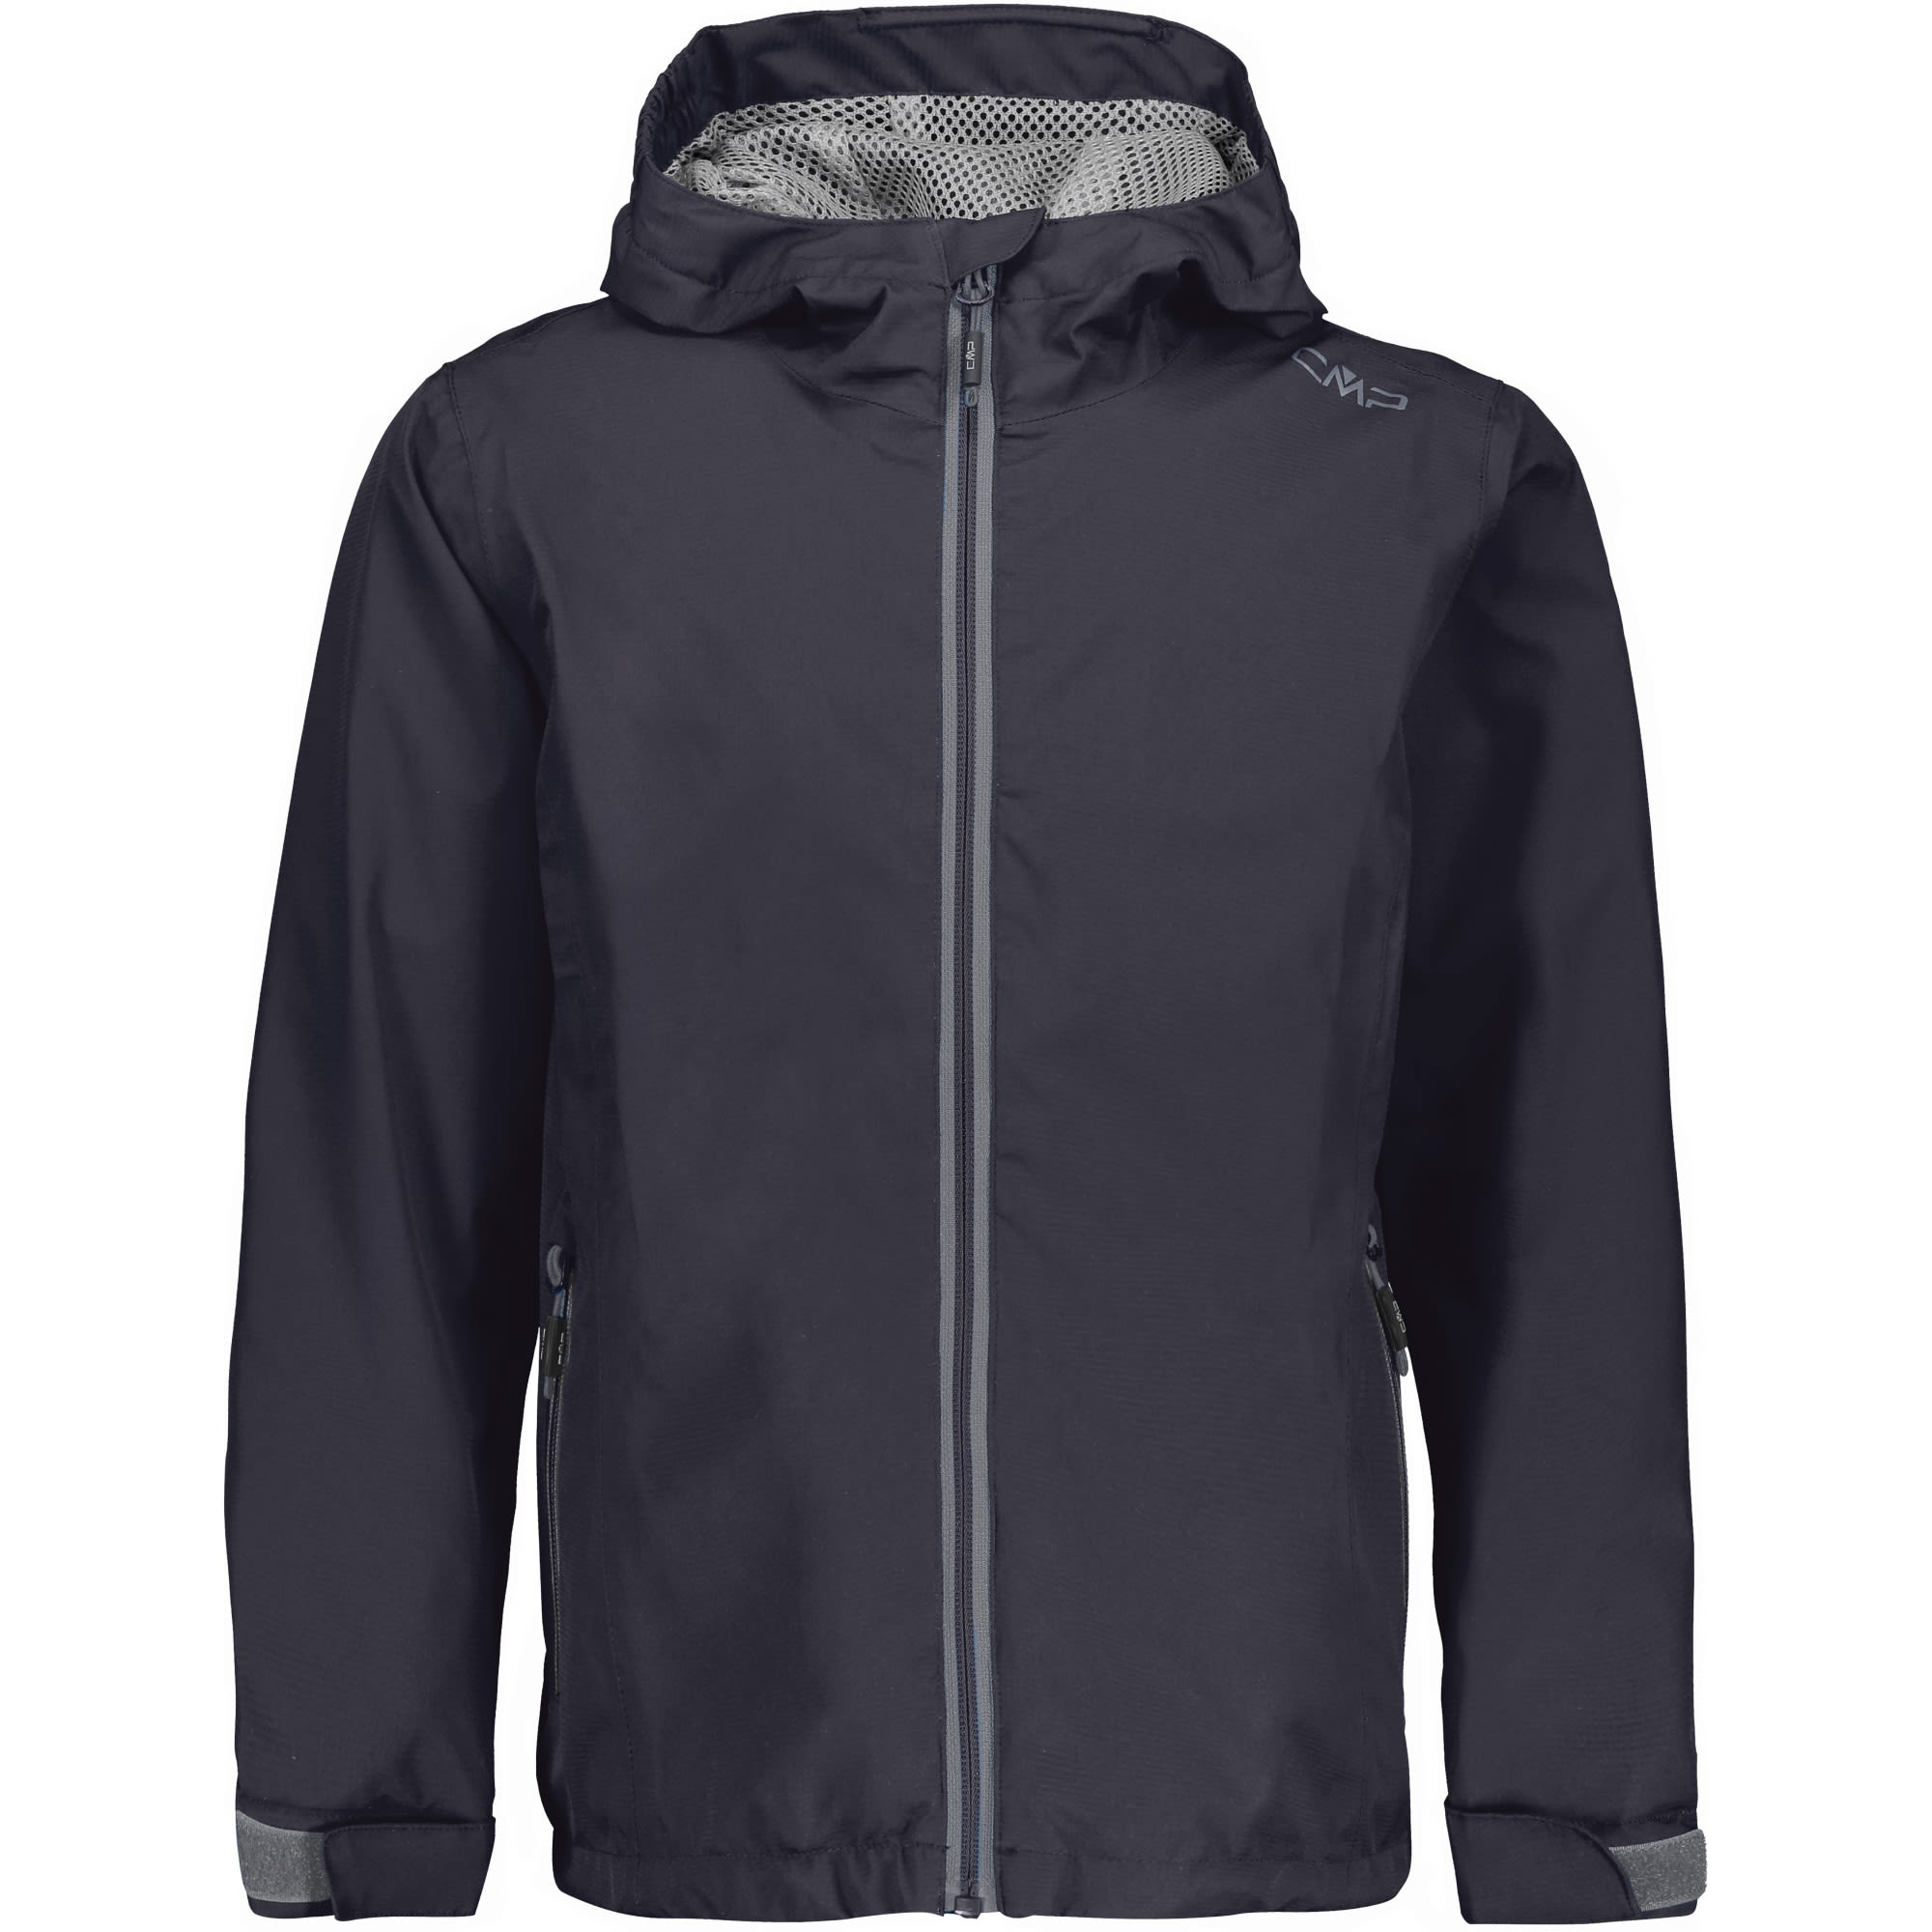 CMP BOY Jacket FIX Hood Schwarz- Male Regenjacken und Hardshells- Grsse 104 - Farbe Antracite